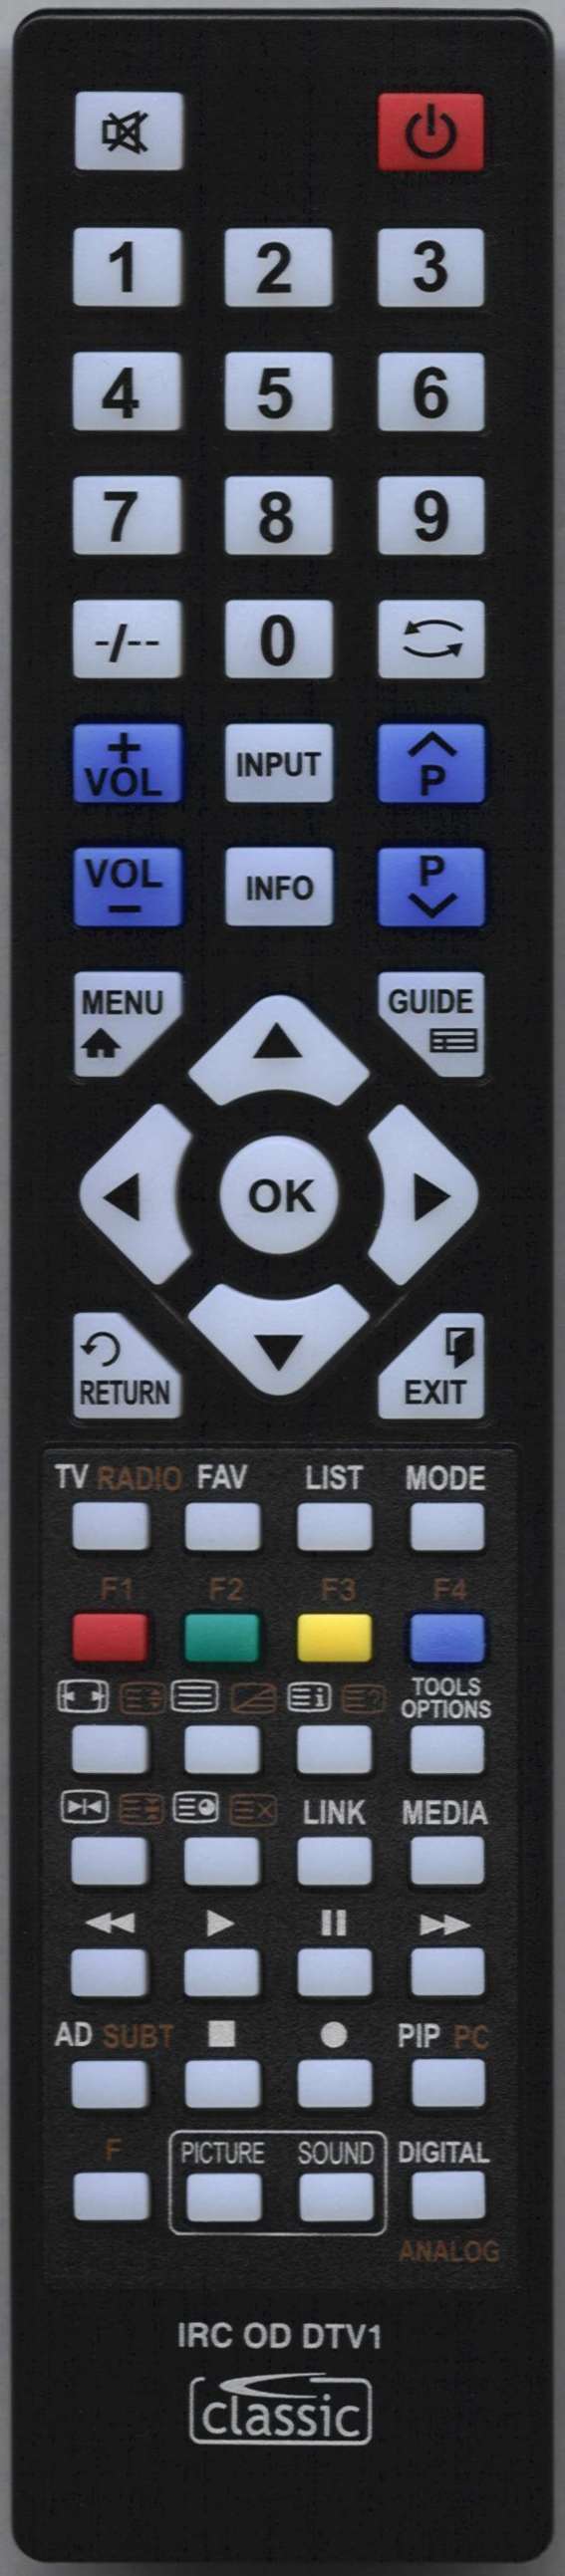 Samsung UE49KU6400U Remote Control